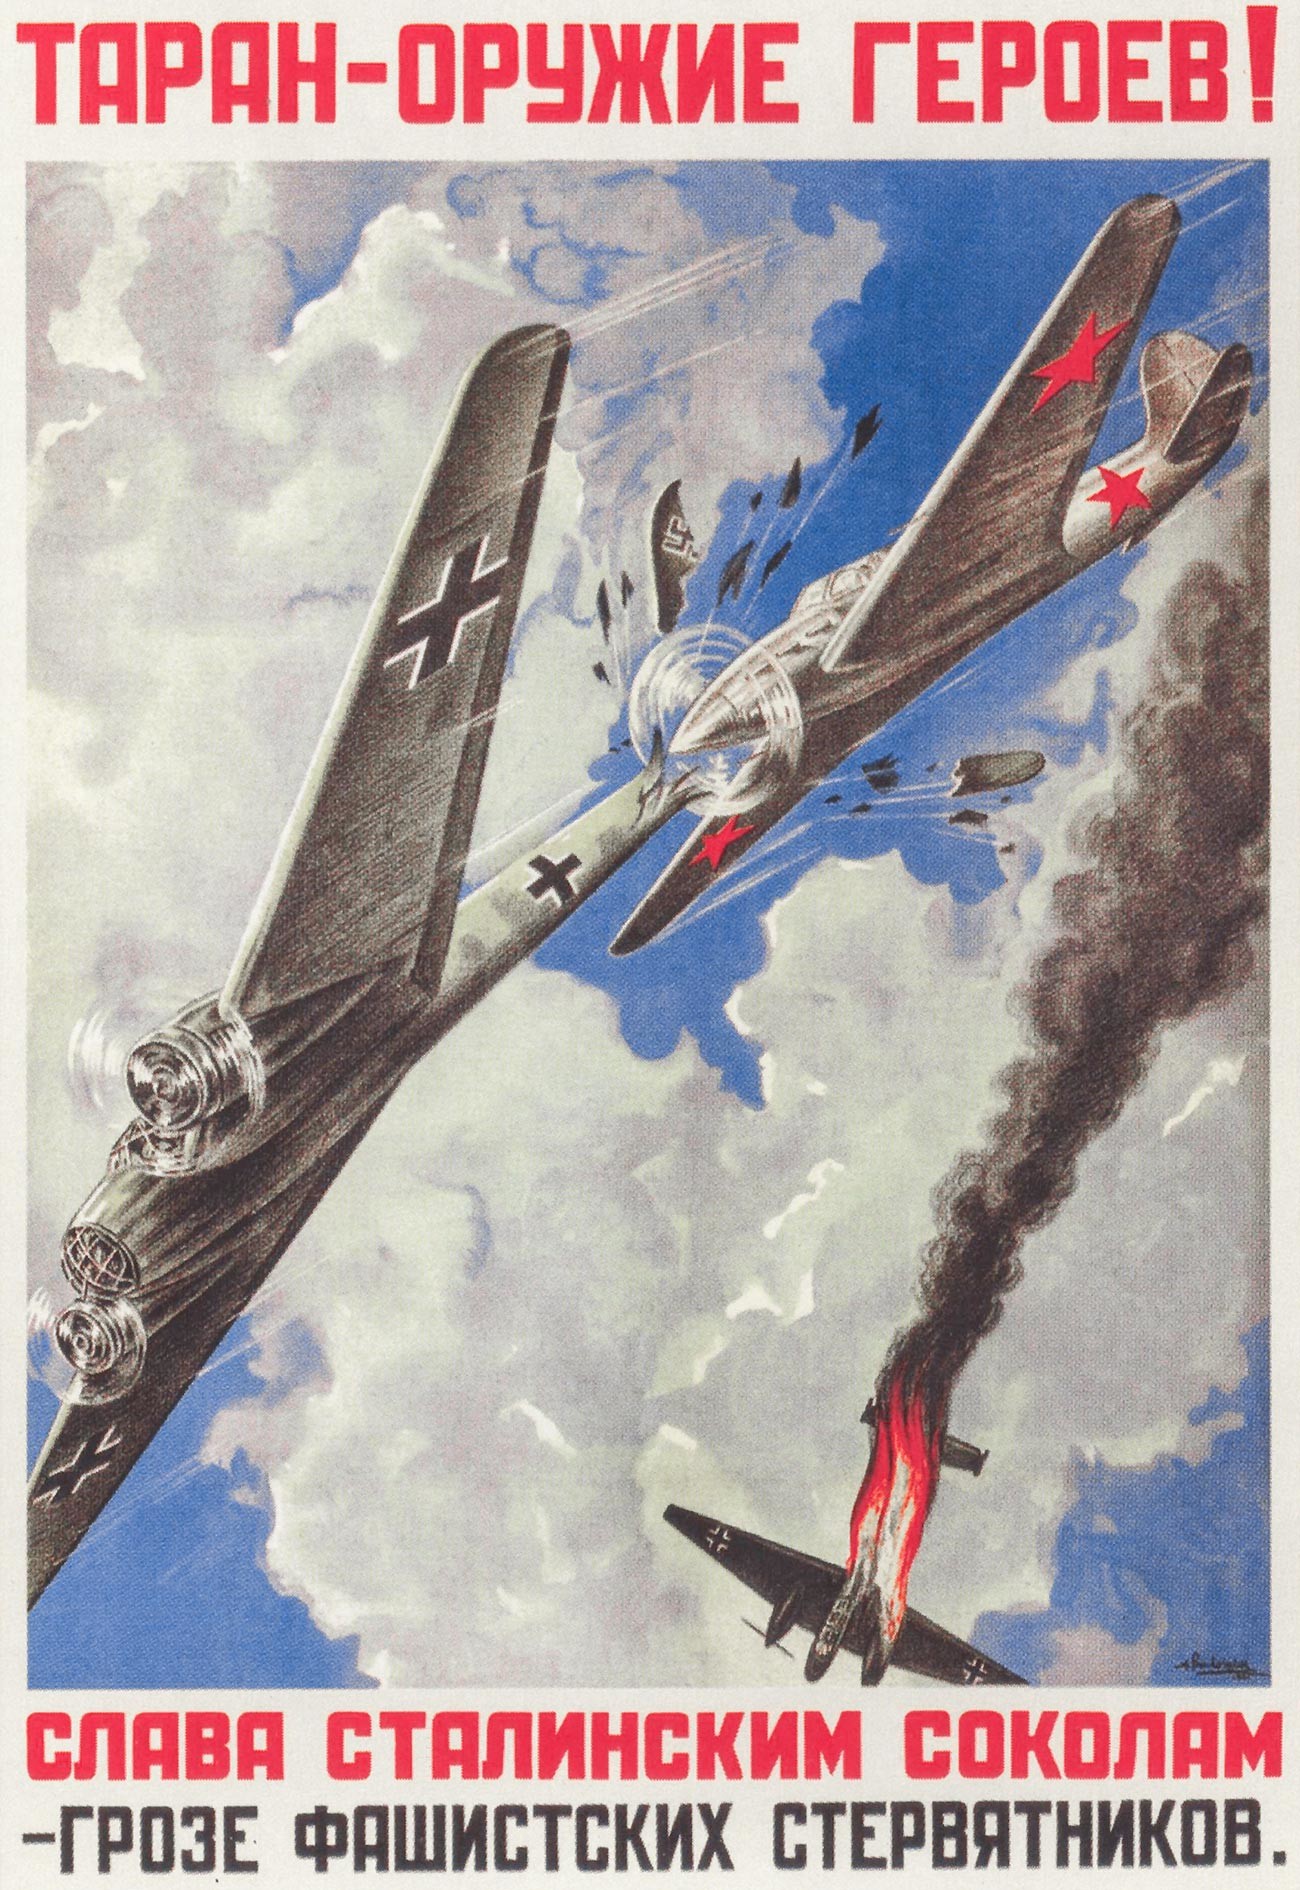 « Le taran [abordage aérien] est l’arme des héros ! Gloire aux faucons de Staline, terreur des vautours fachistes »